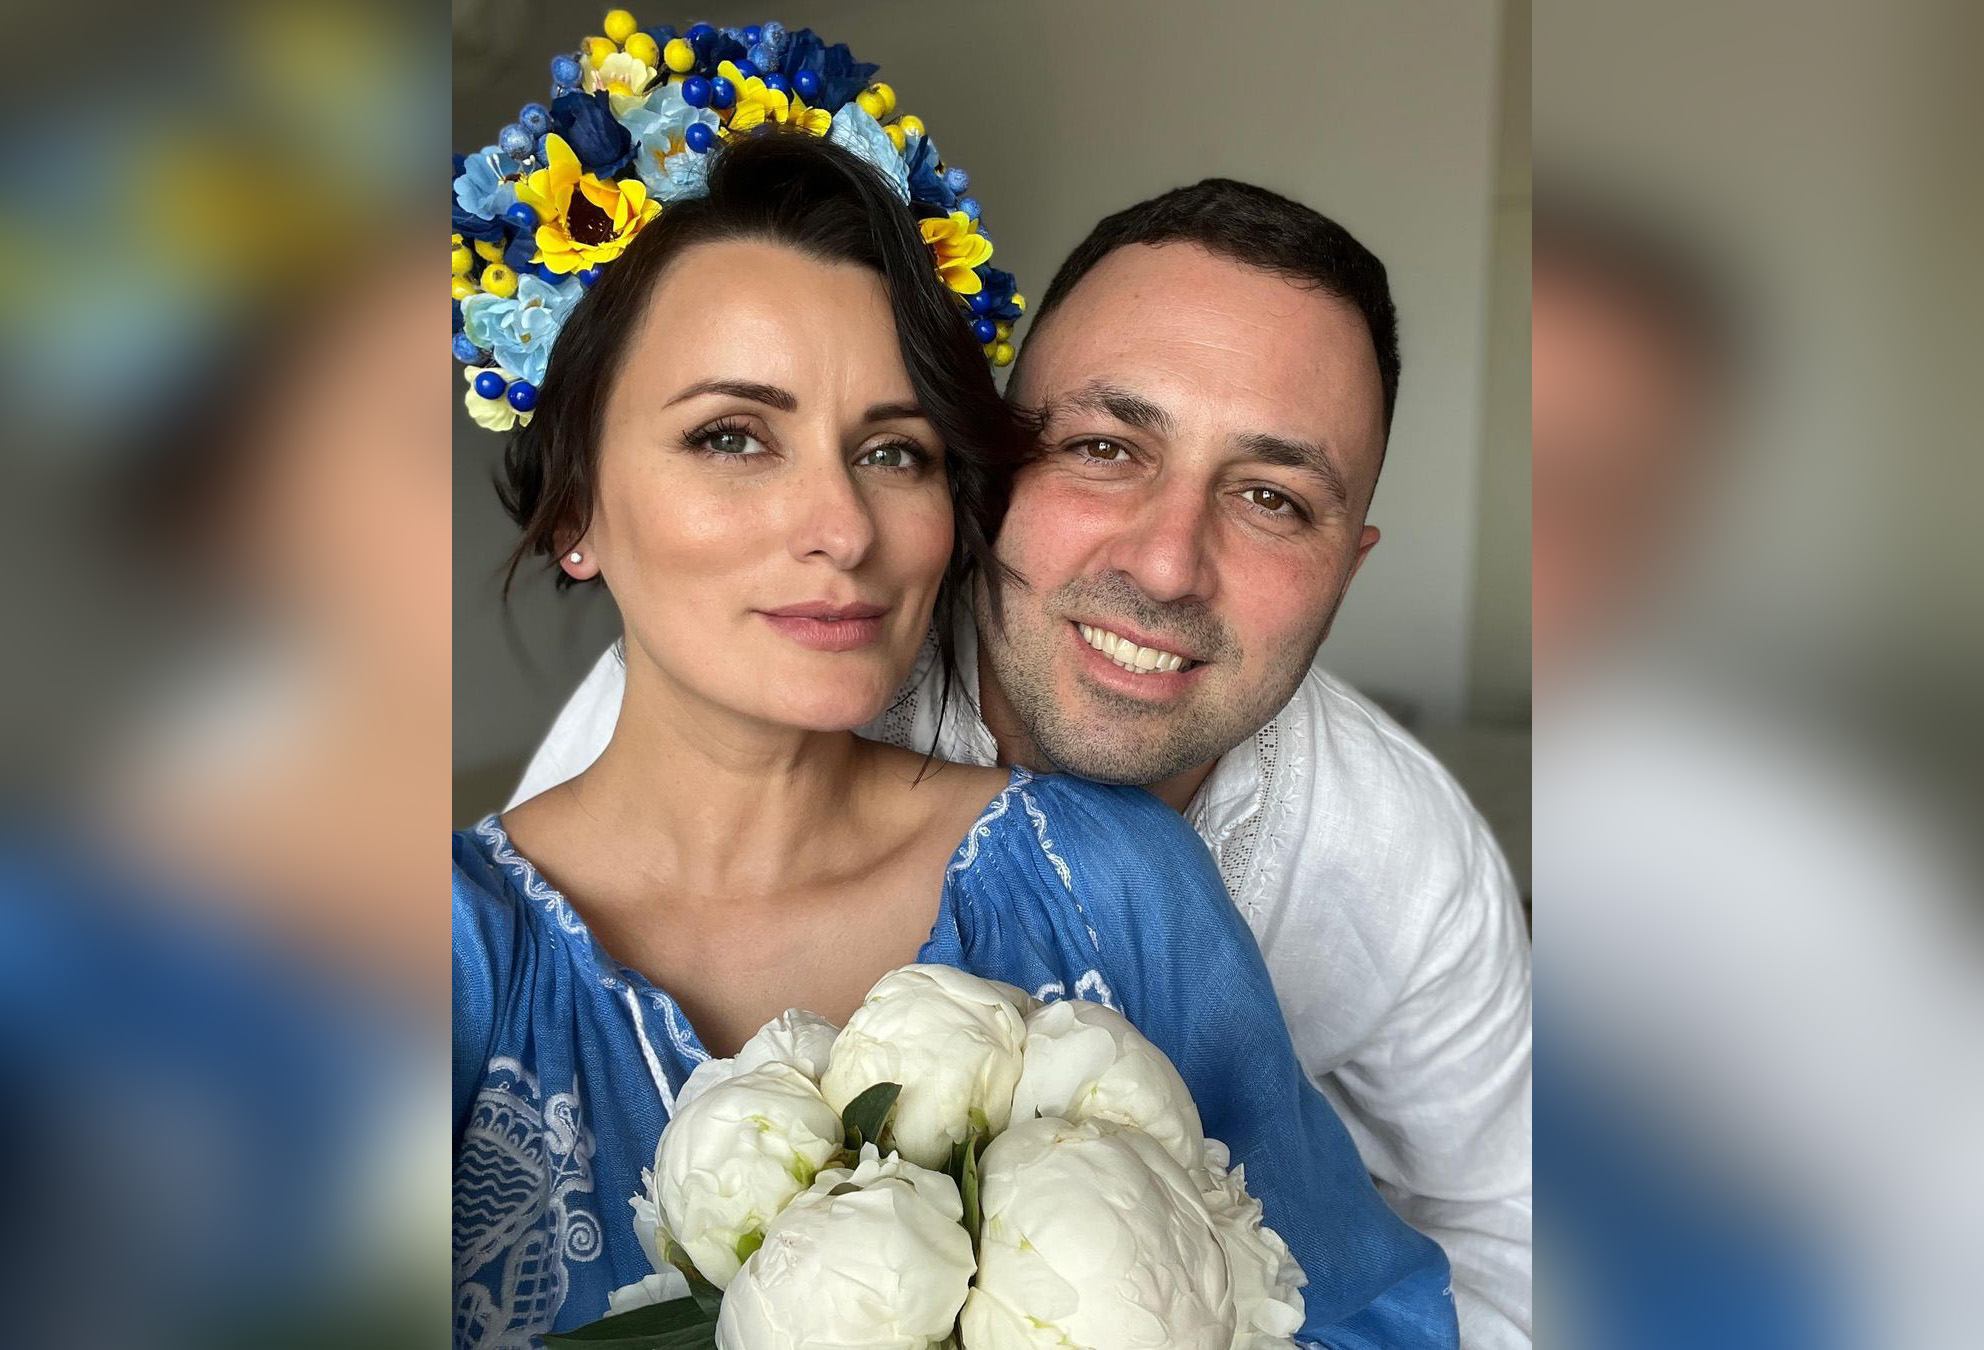 Лиза Глинская сначала хотела отменить свадьбу, но потом подумала, что у них есть право на счастье. Фото: Instagram.com/lizaglinskaya/